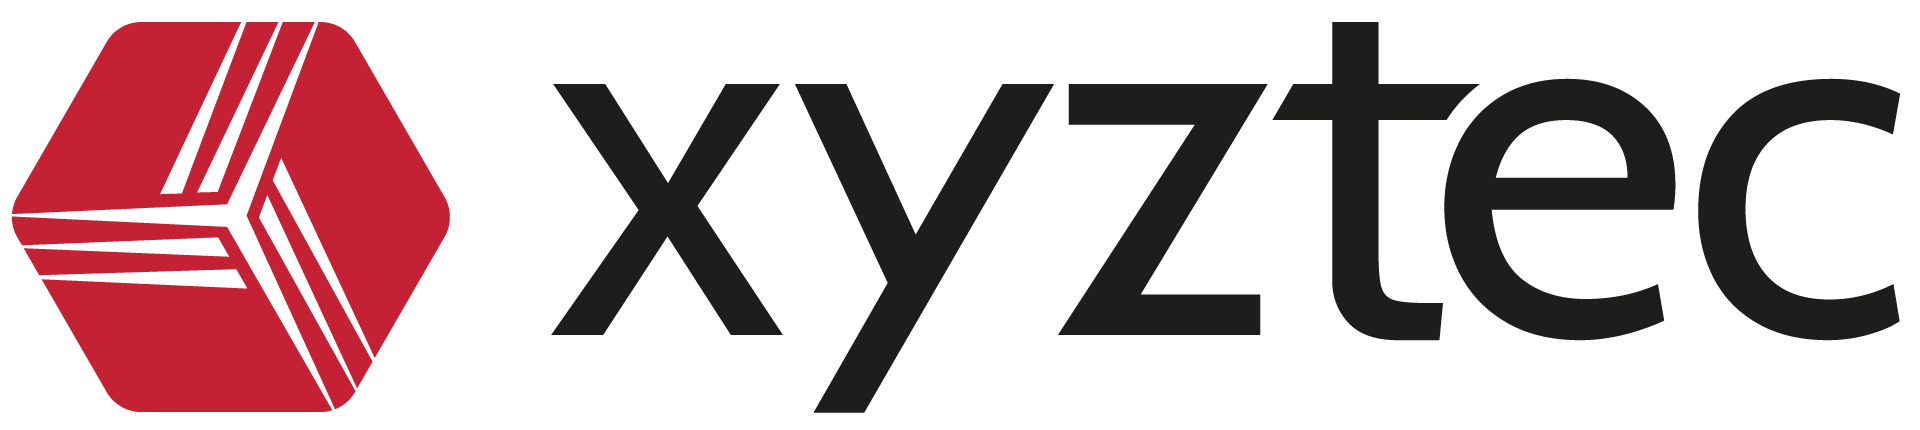 Xyztec logo